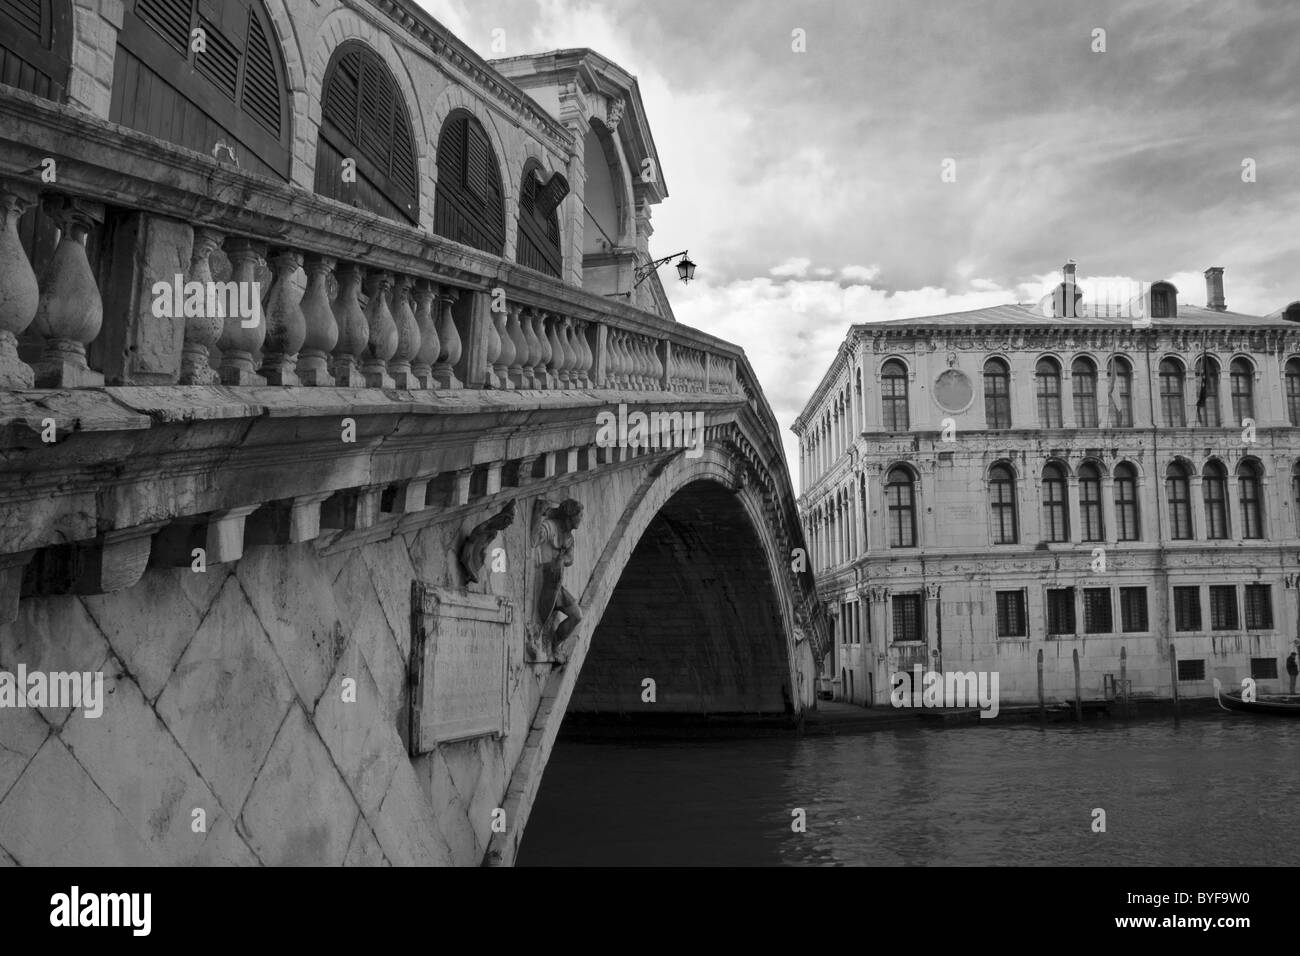 Black and white vie of the Rialto bridge in Venice Stock Photo